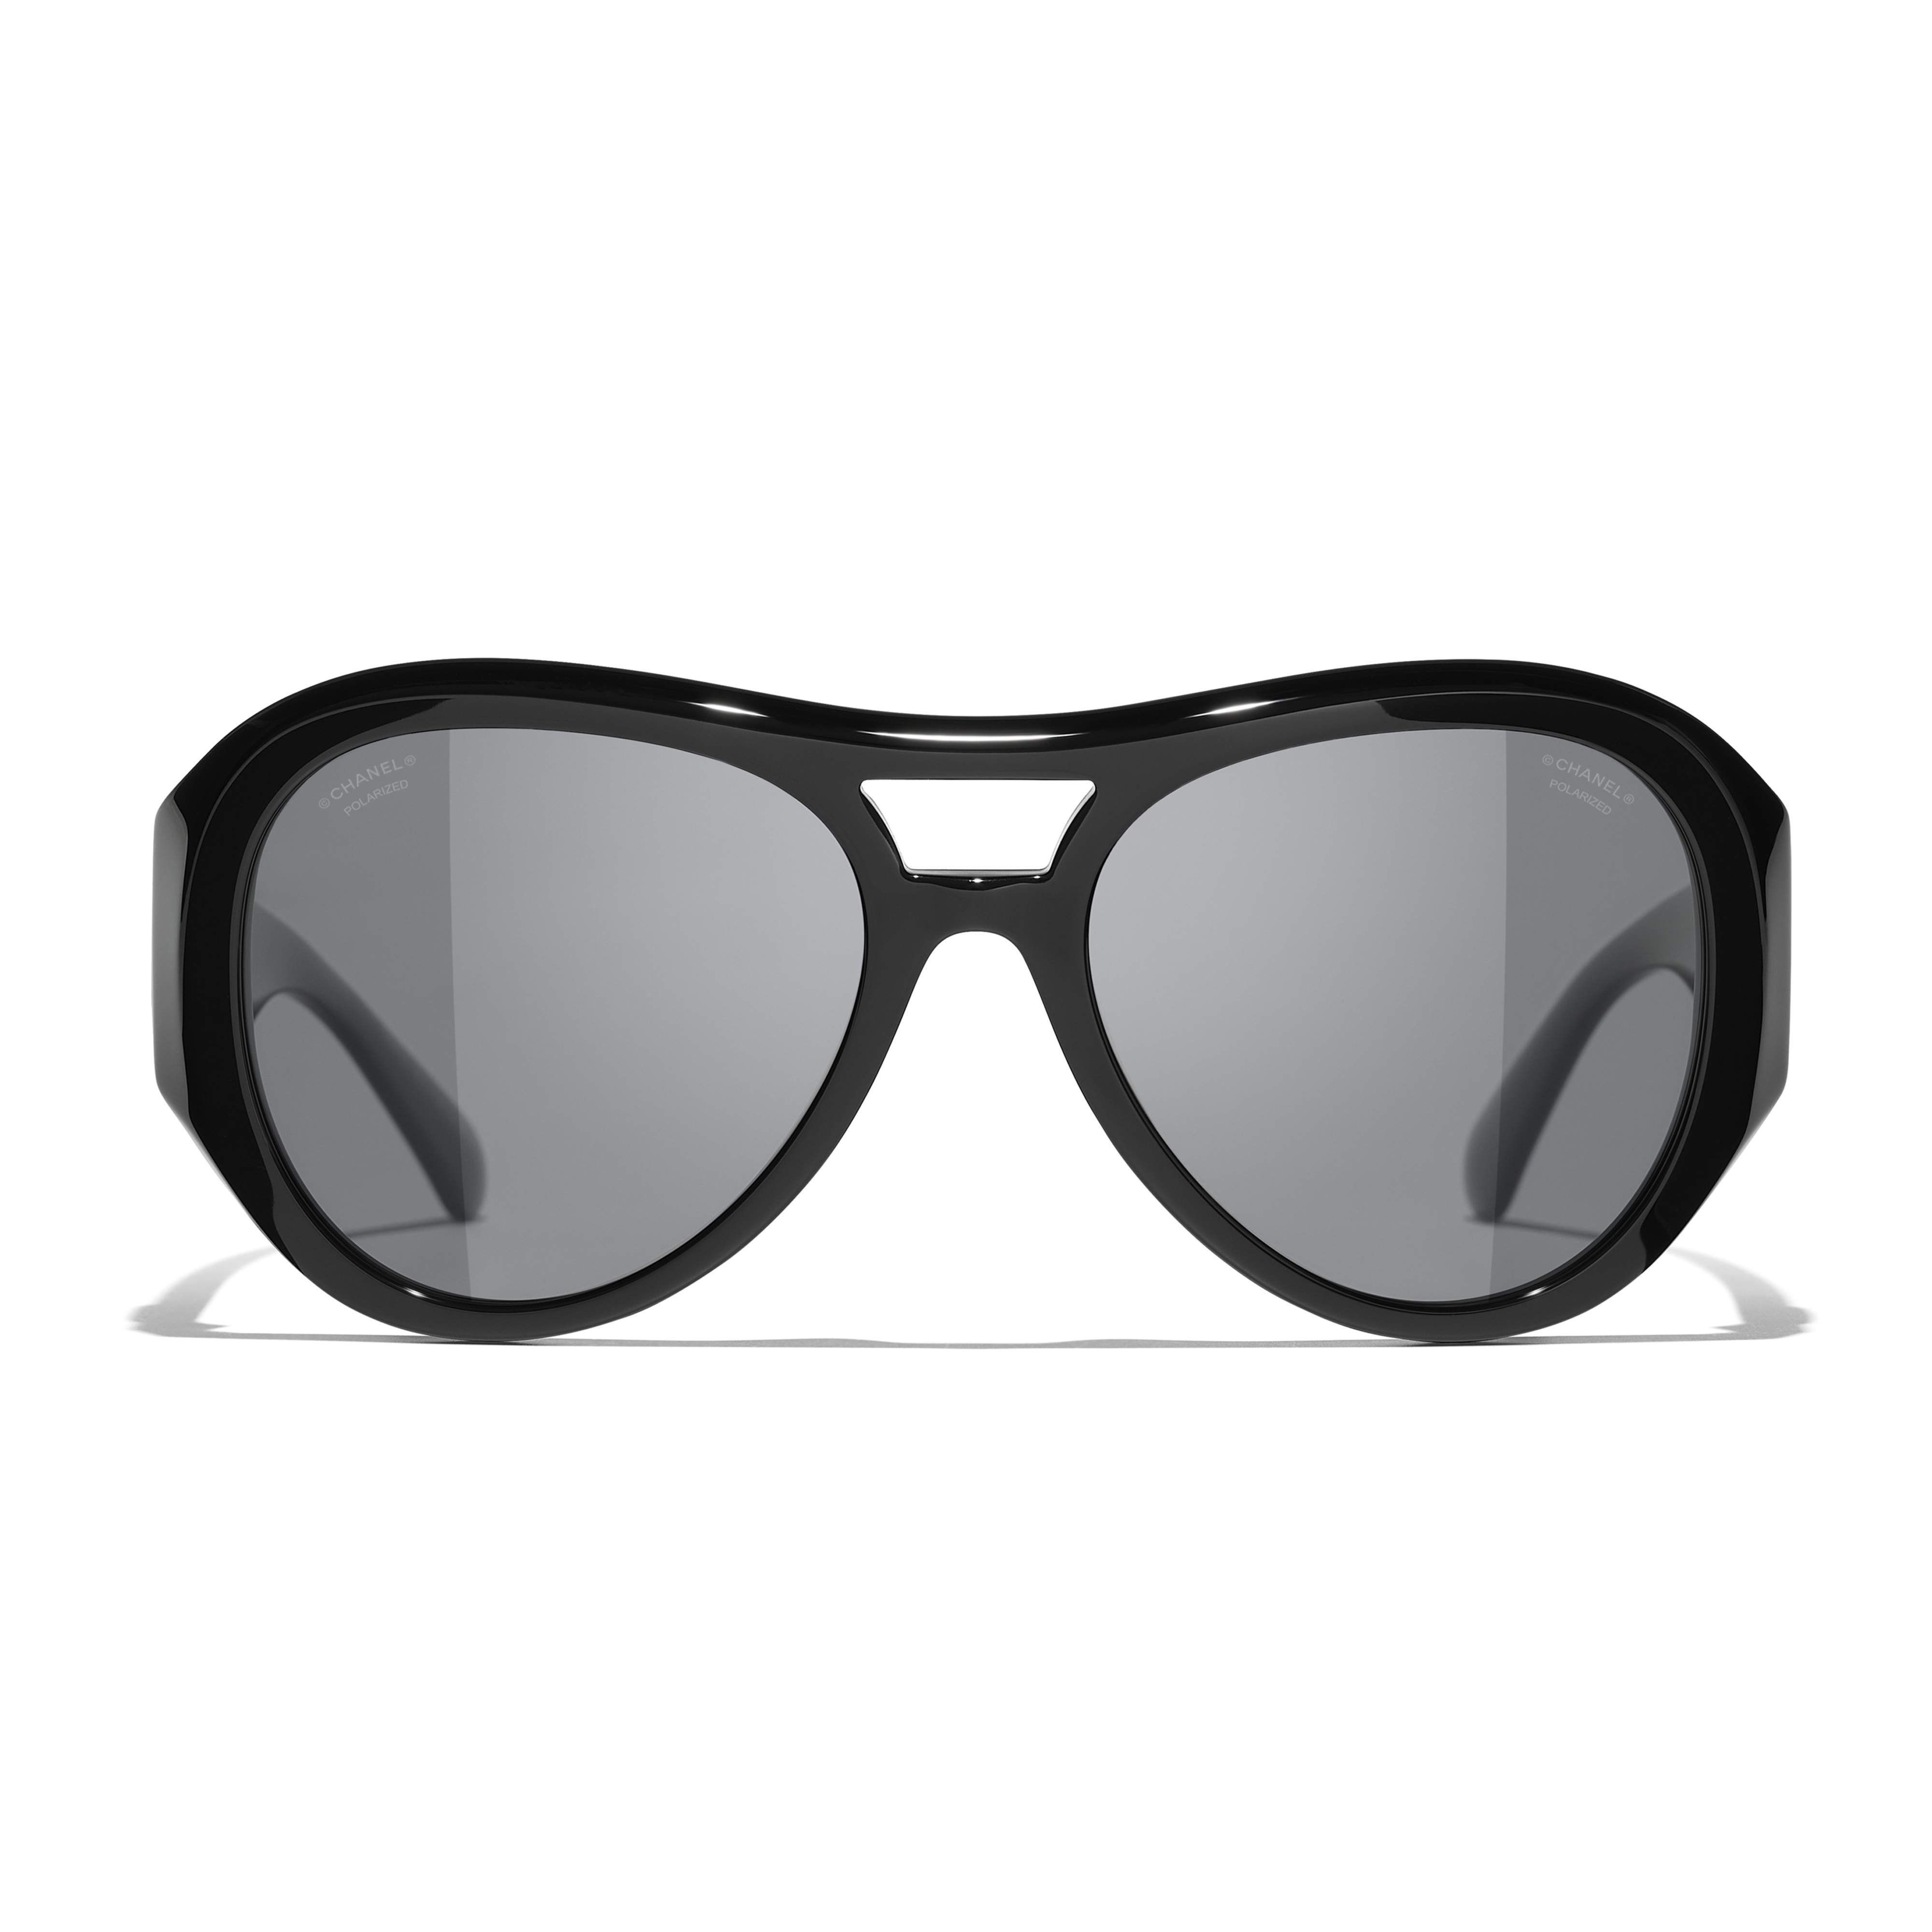 Sunglasses CHANEL CH5508 C501T8 56-18 Black in stock, Price CHF 323.00